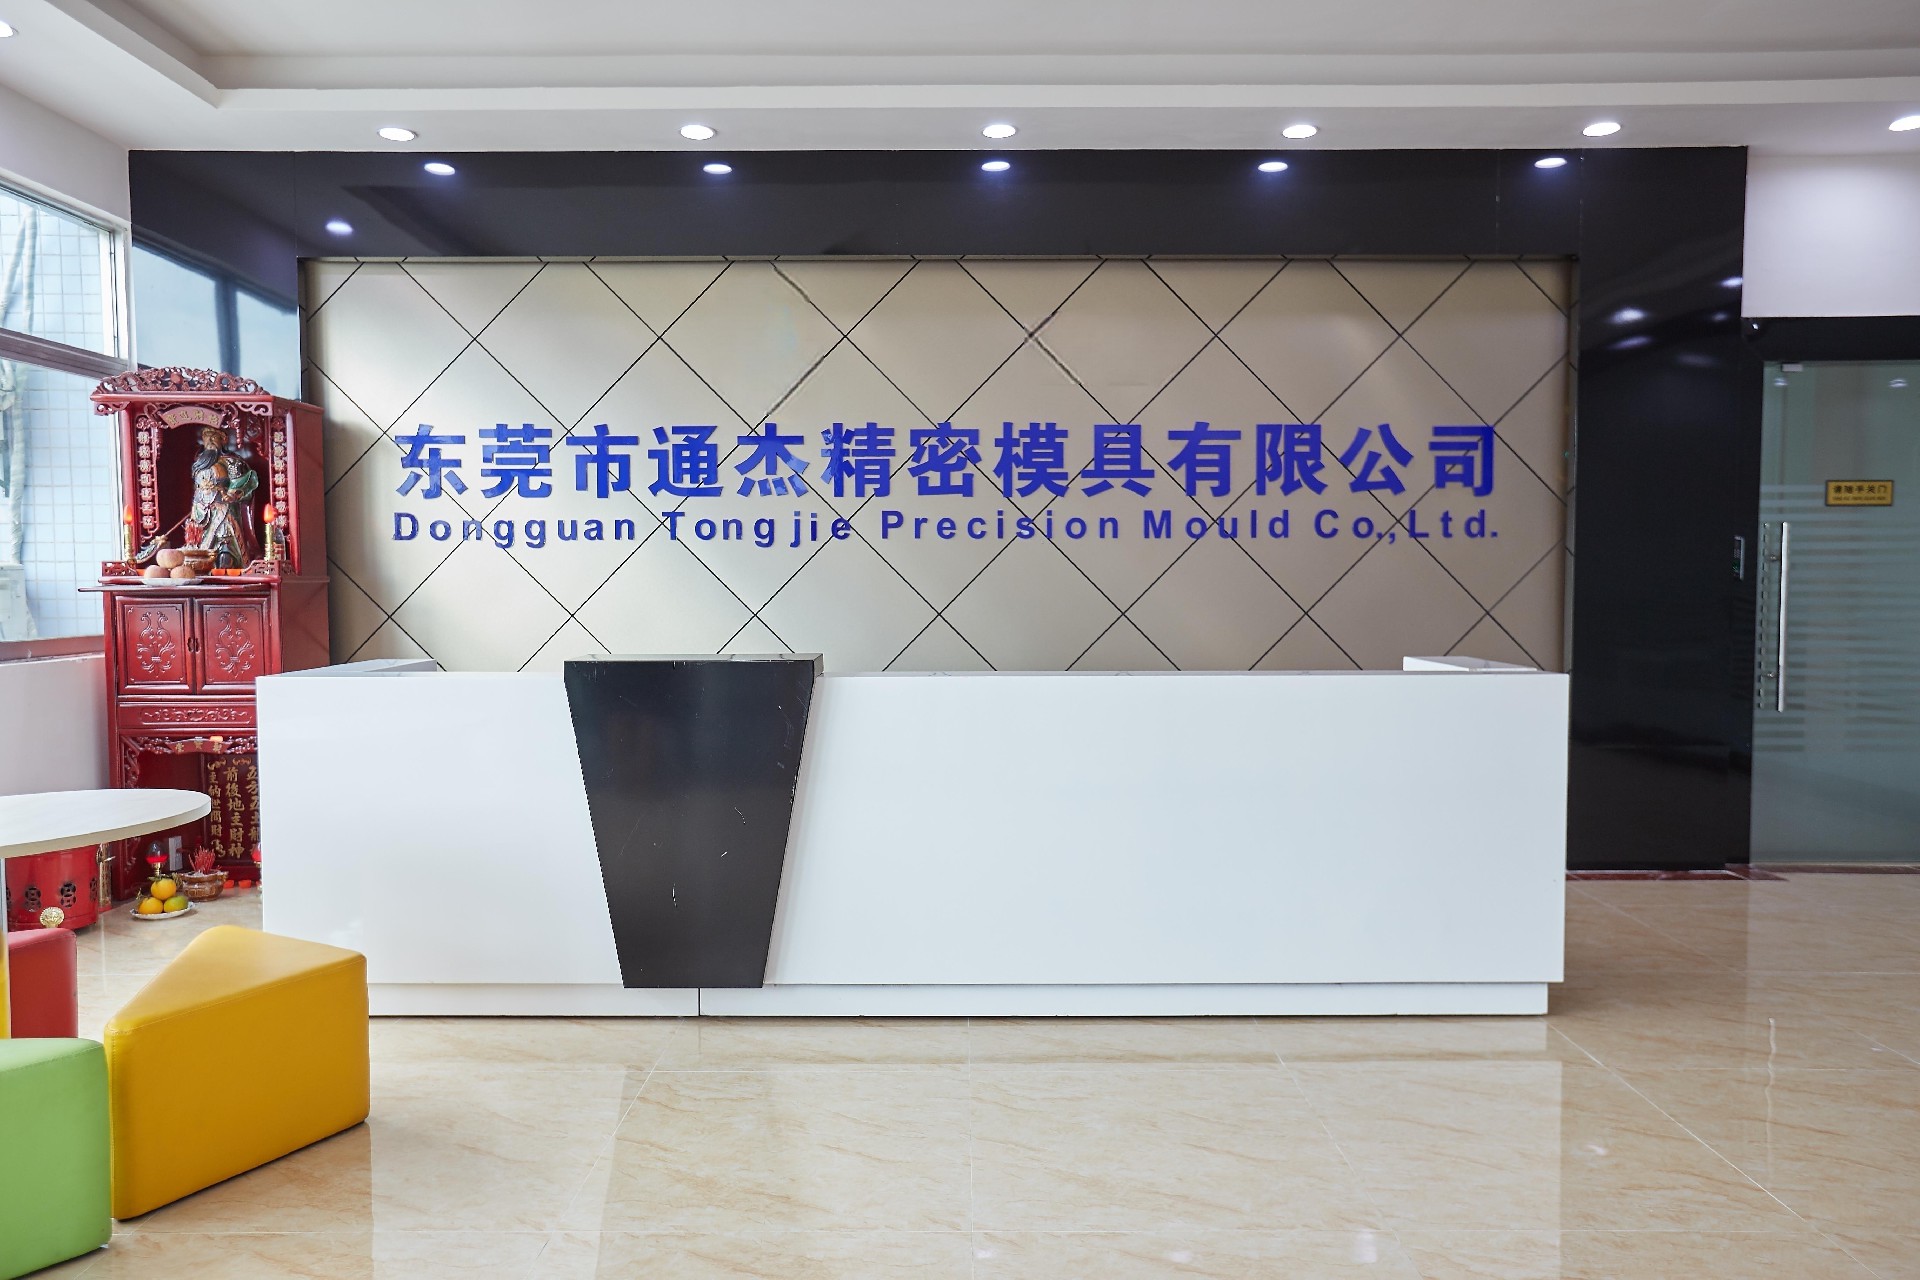 Dongguan Tongjie Precision Mould Co., Ltd